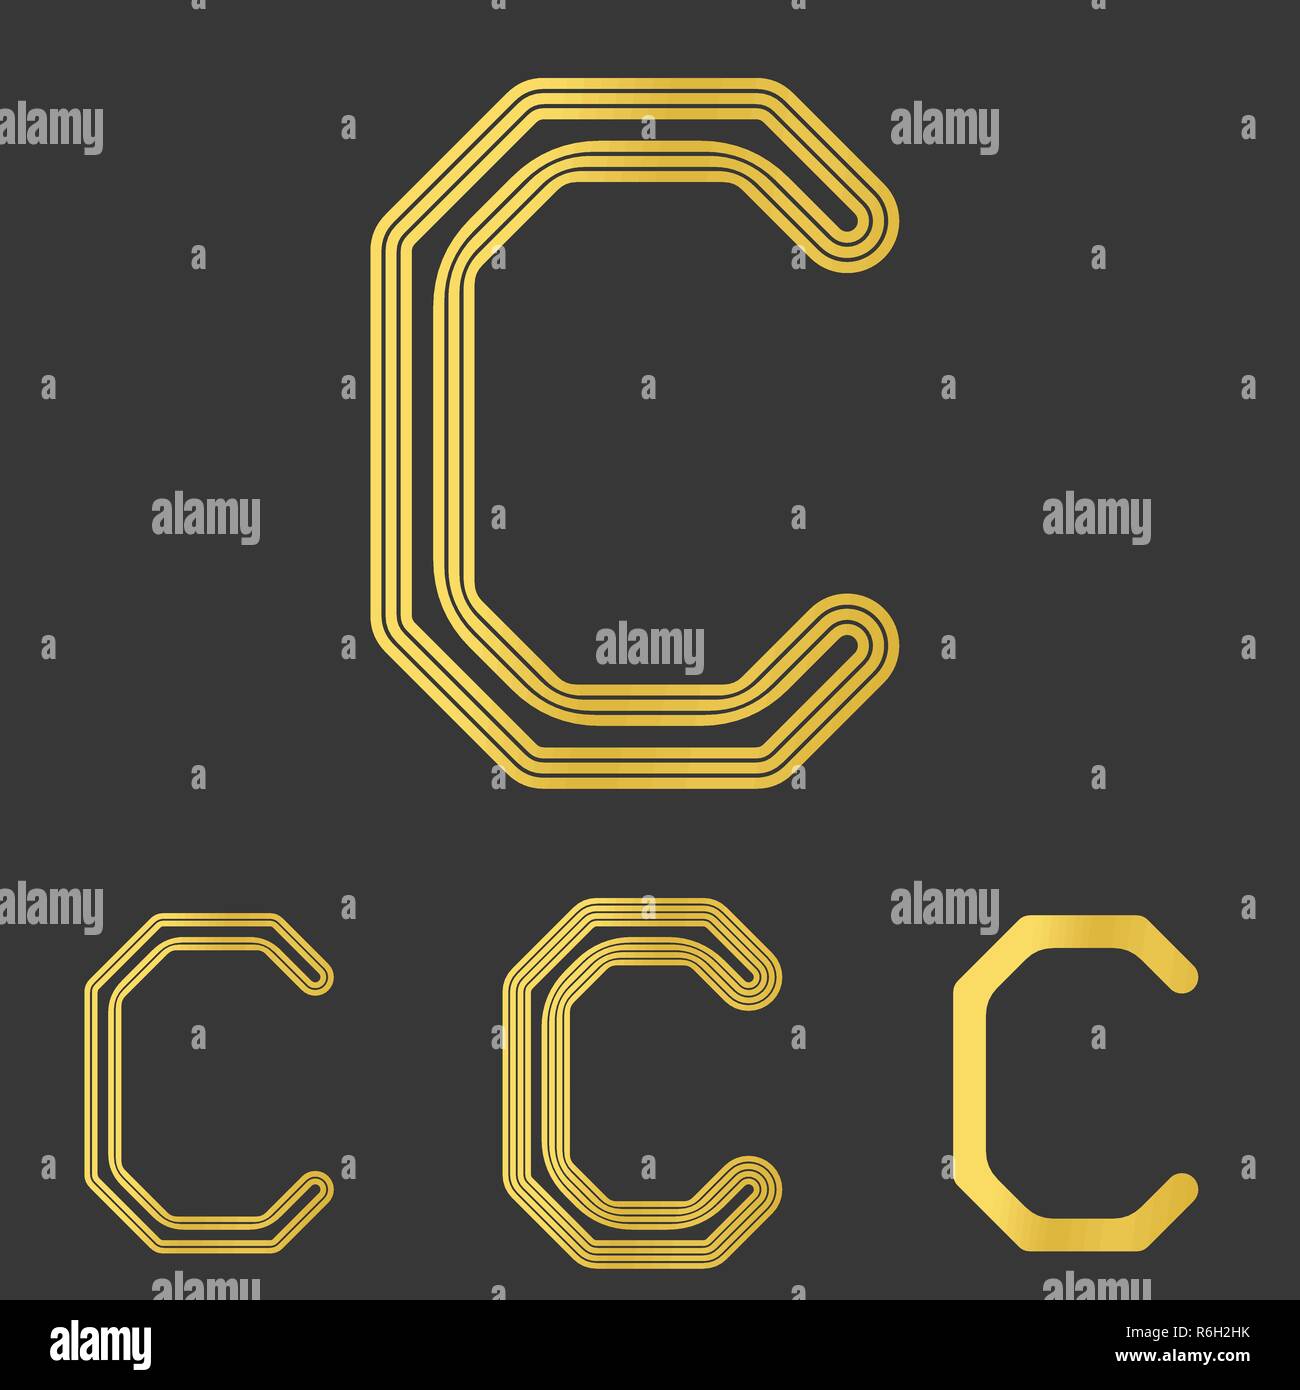 Golden line letter c logo design set Stock Vector